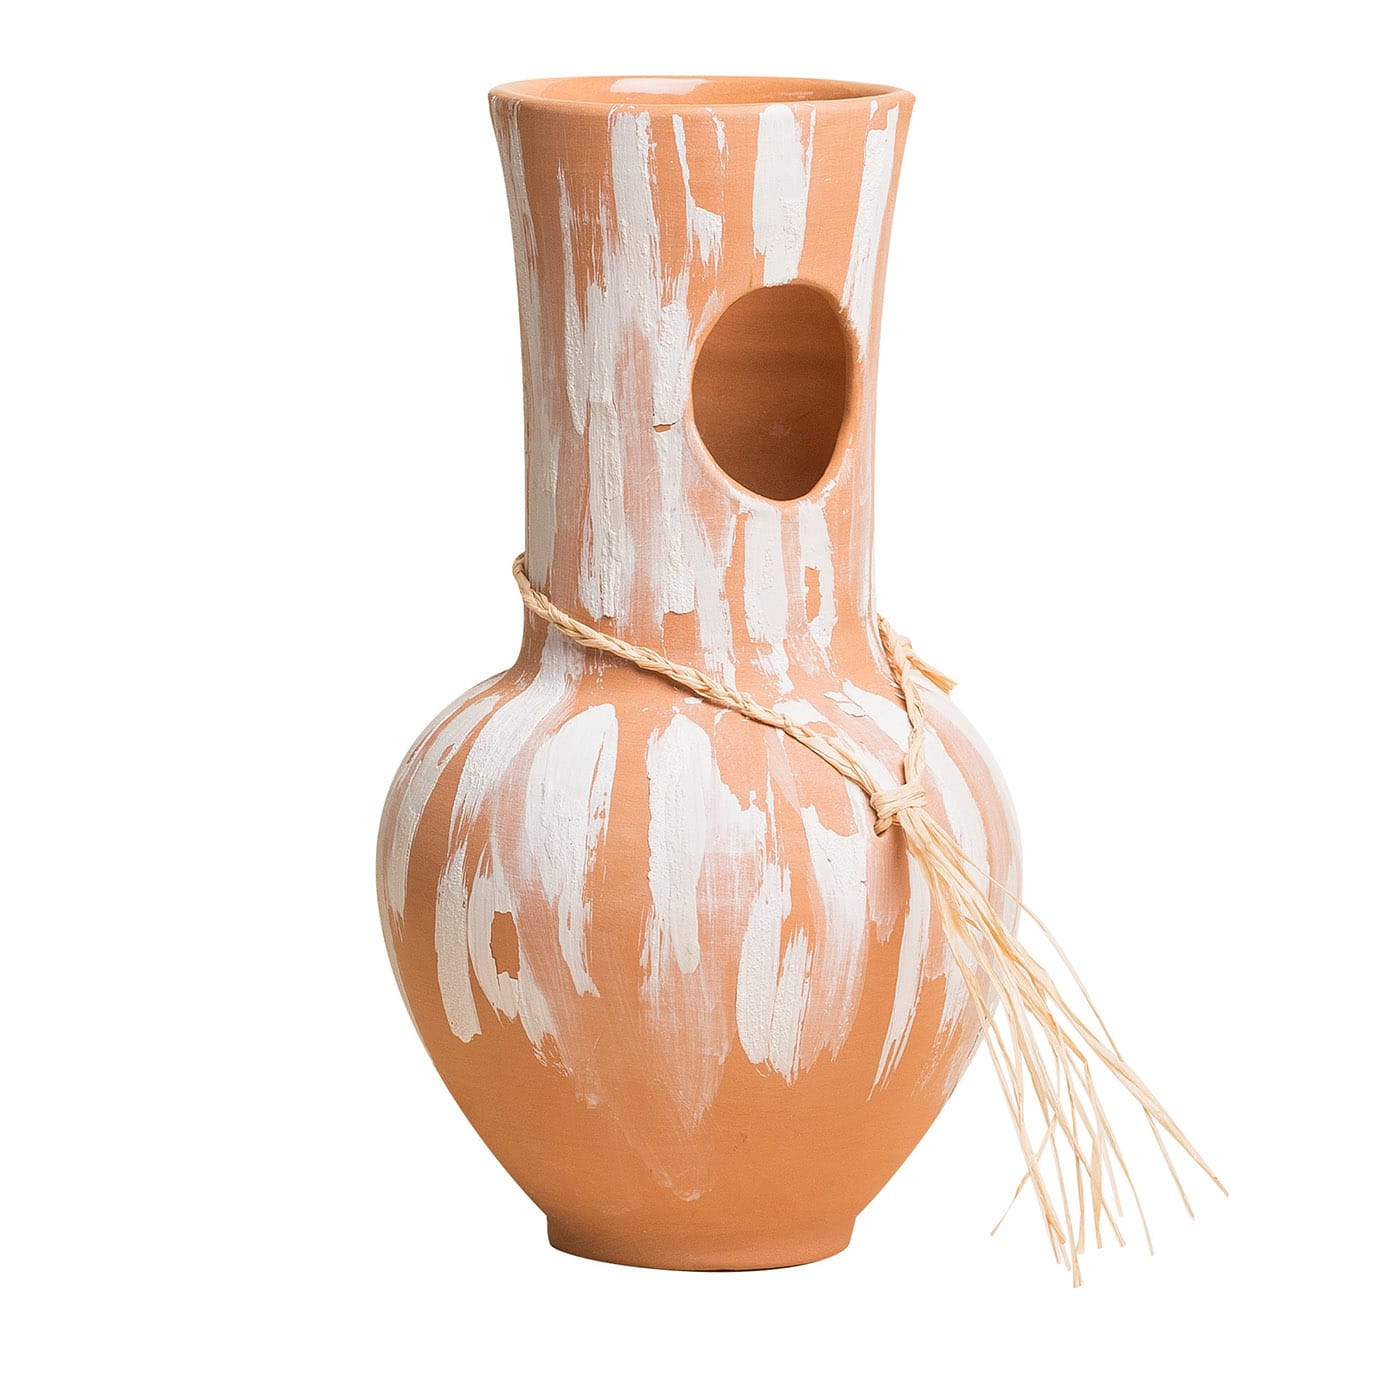 Origini Blooming Amphora Vase - Materia Creative Studio